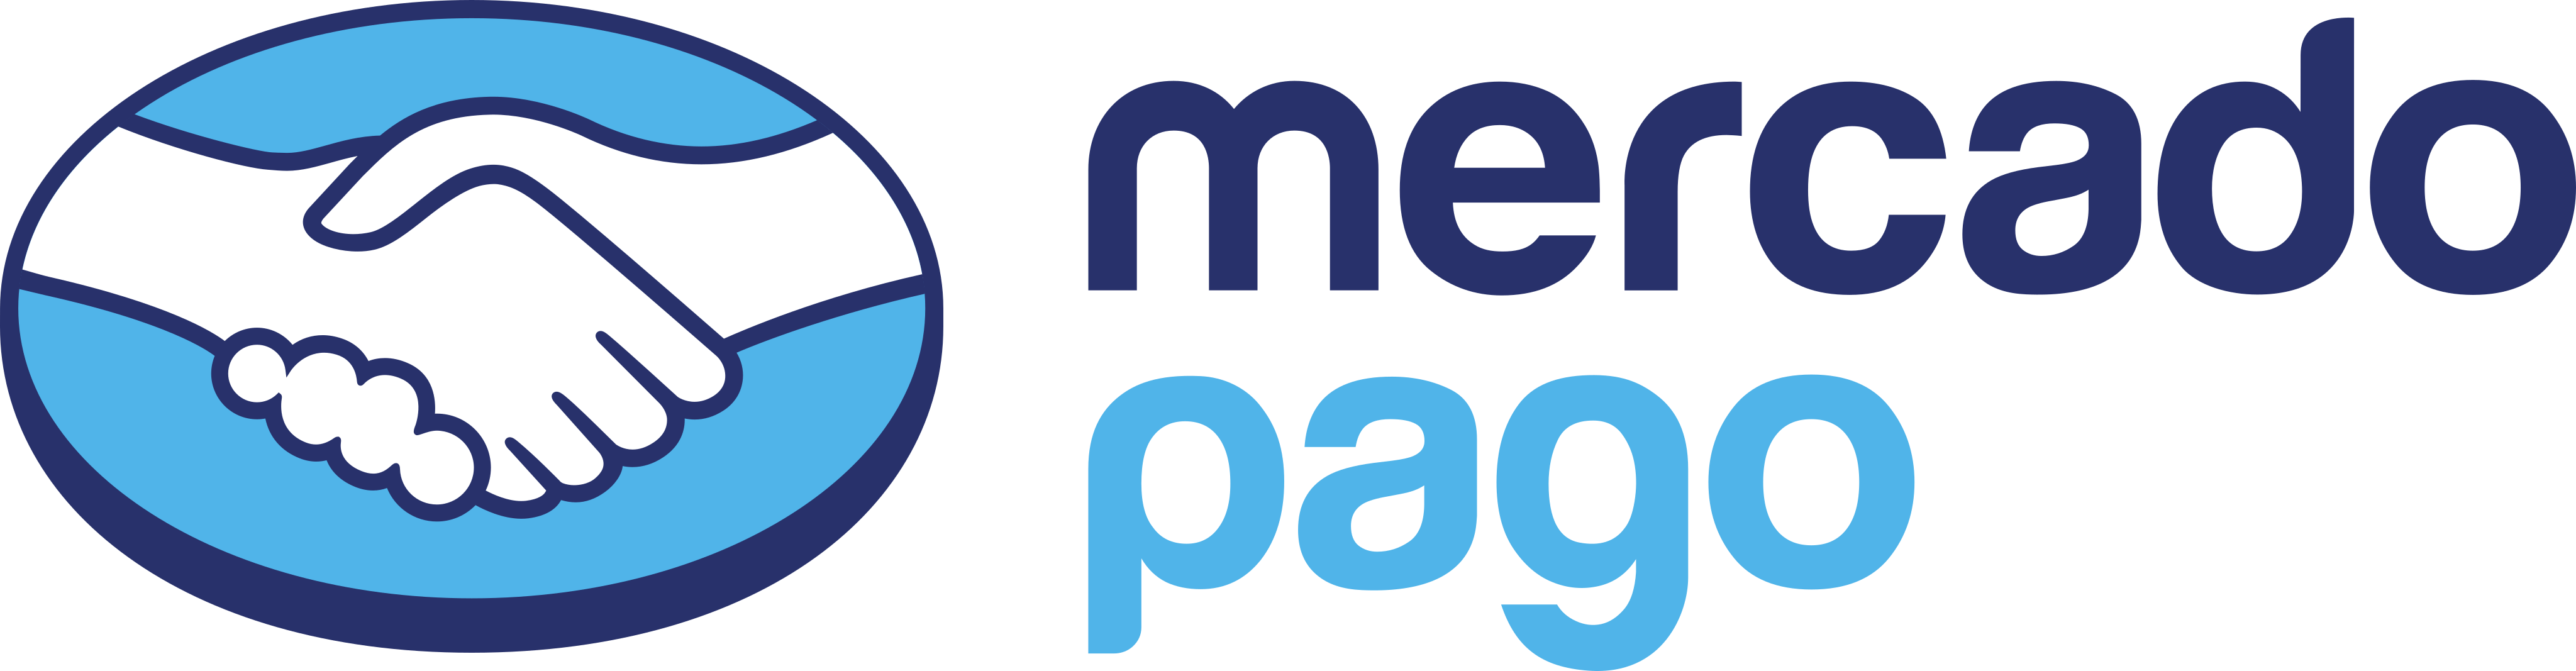 Mercadopago | Payment Services